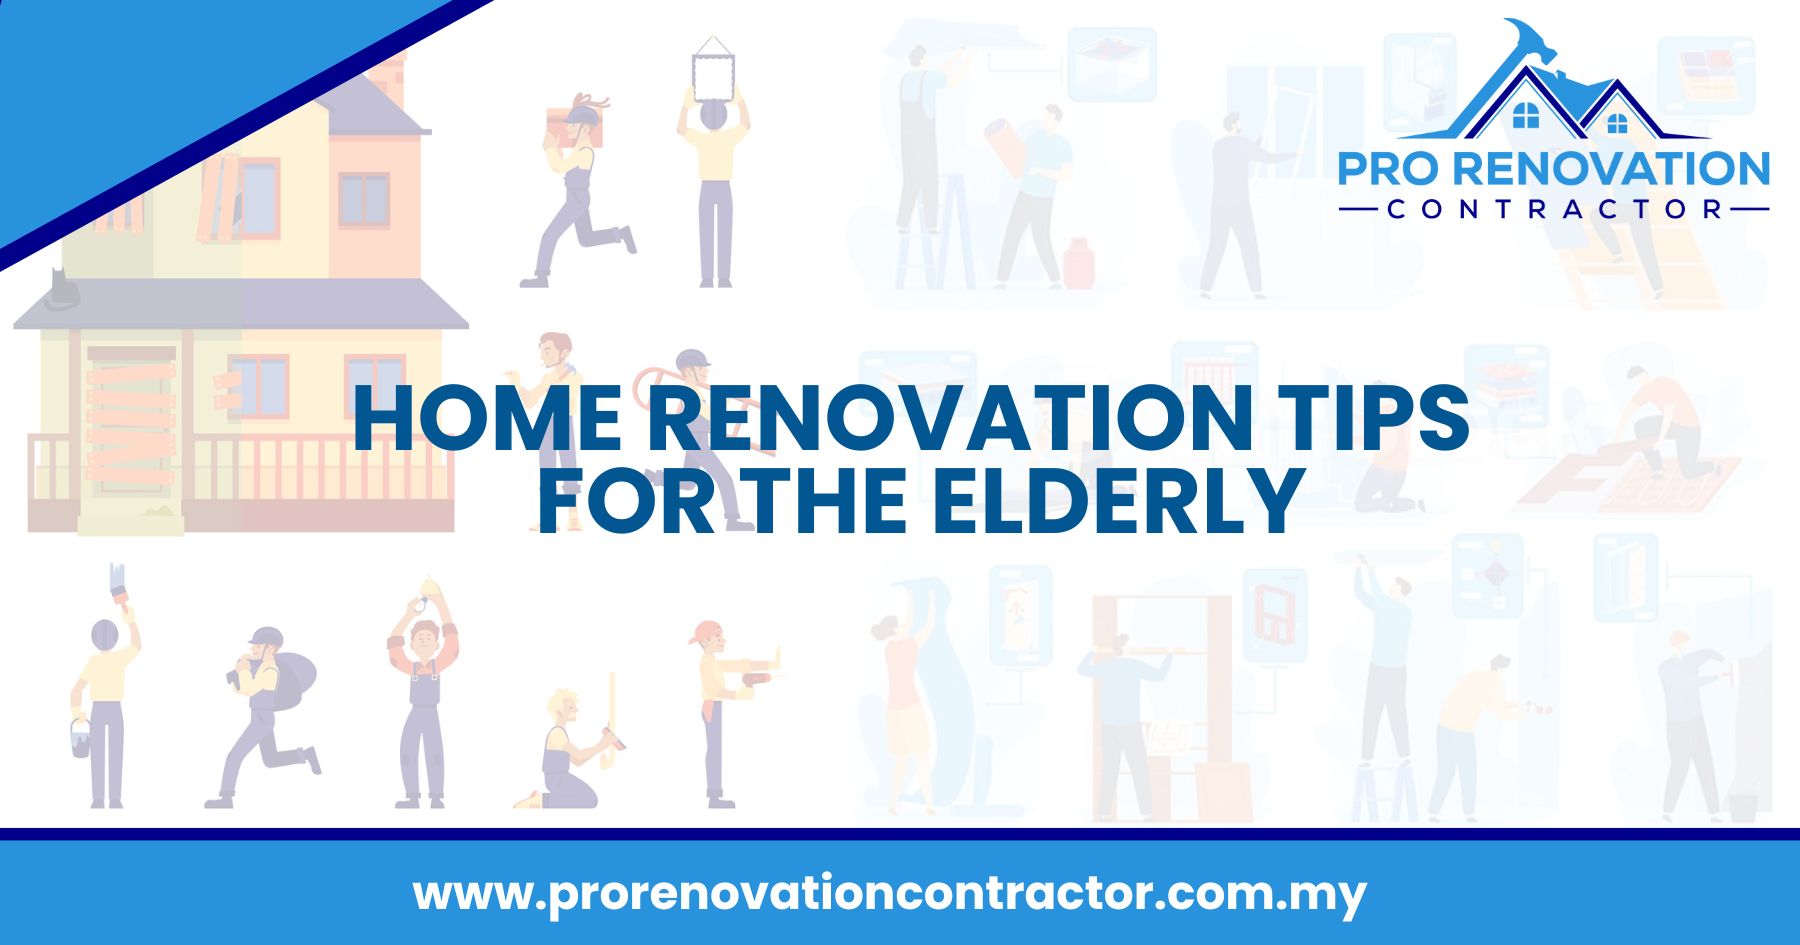 Home Renovation Tips for the Elderly